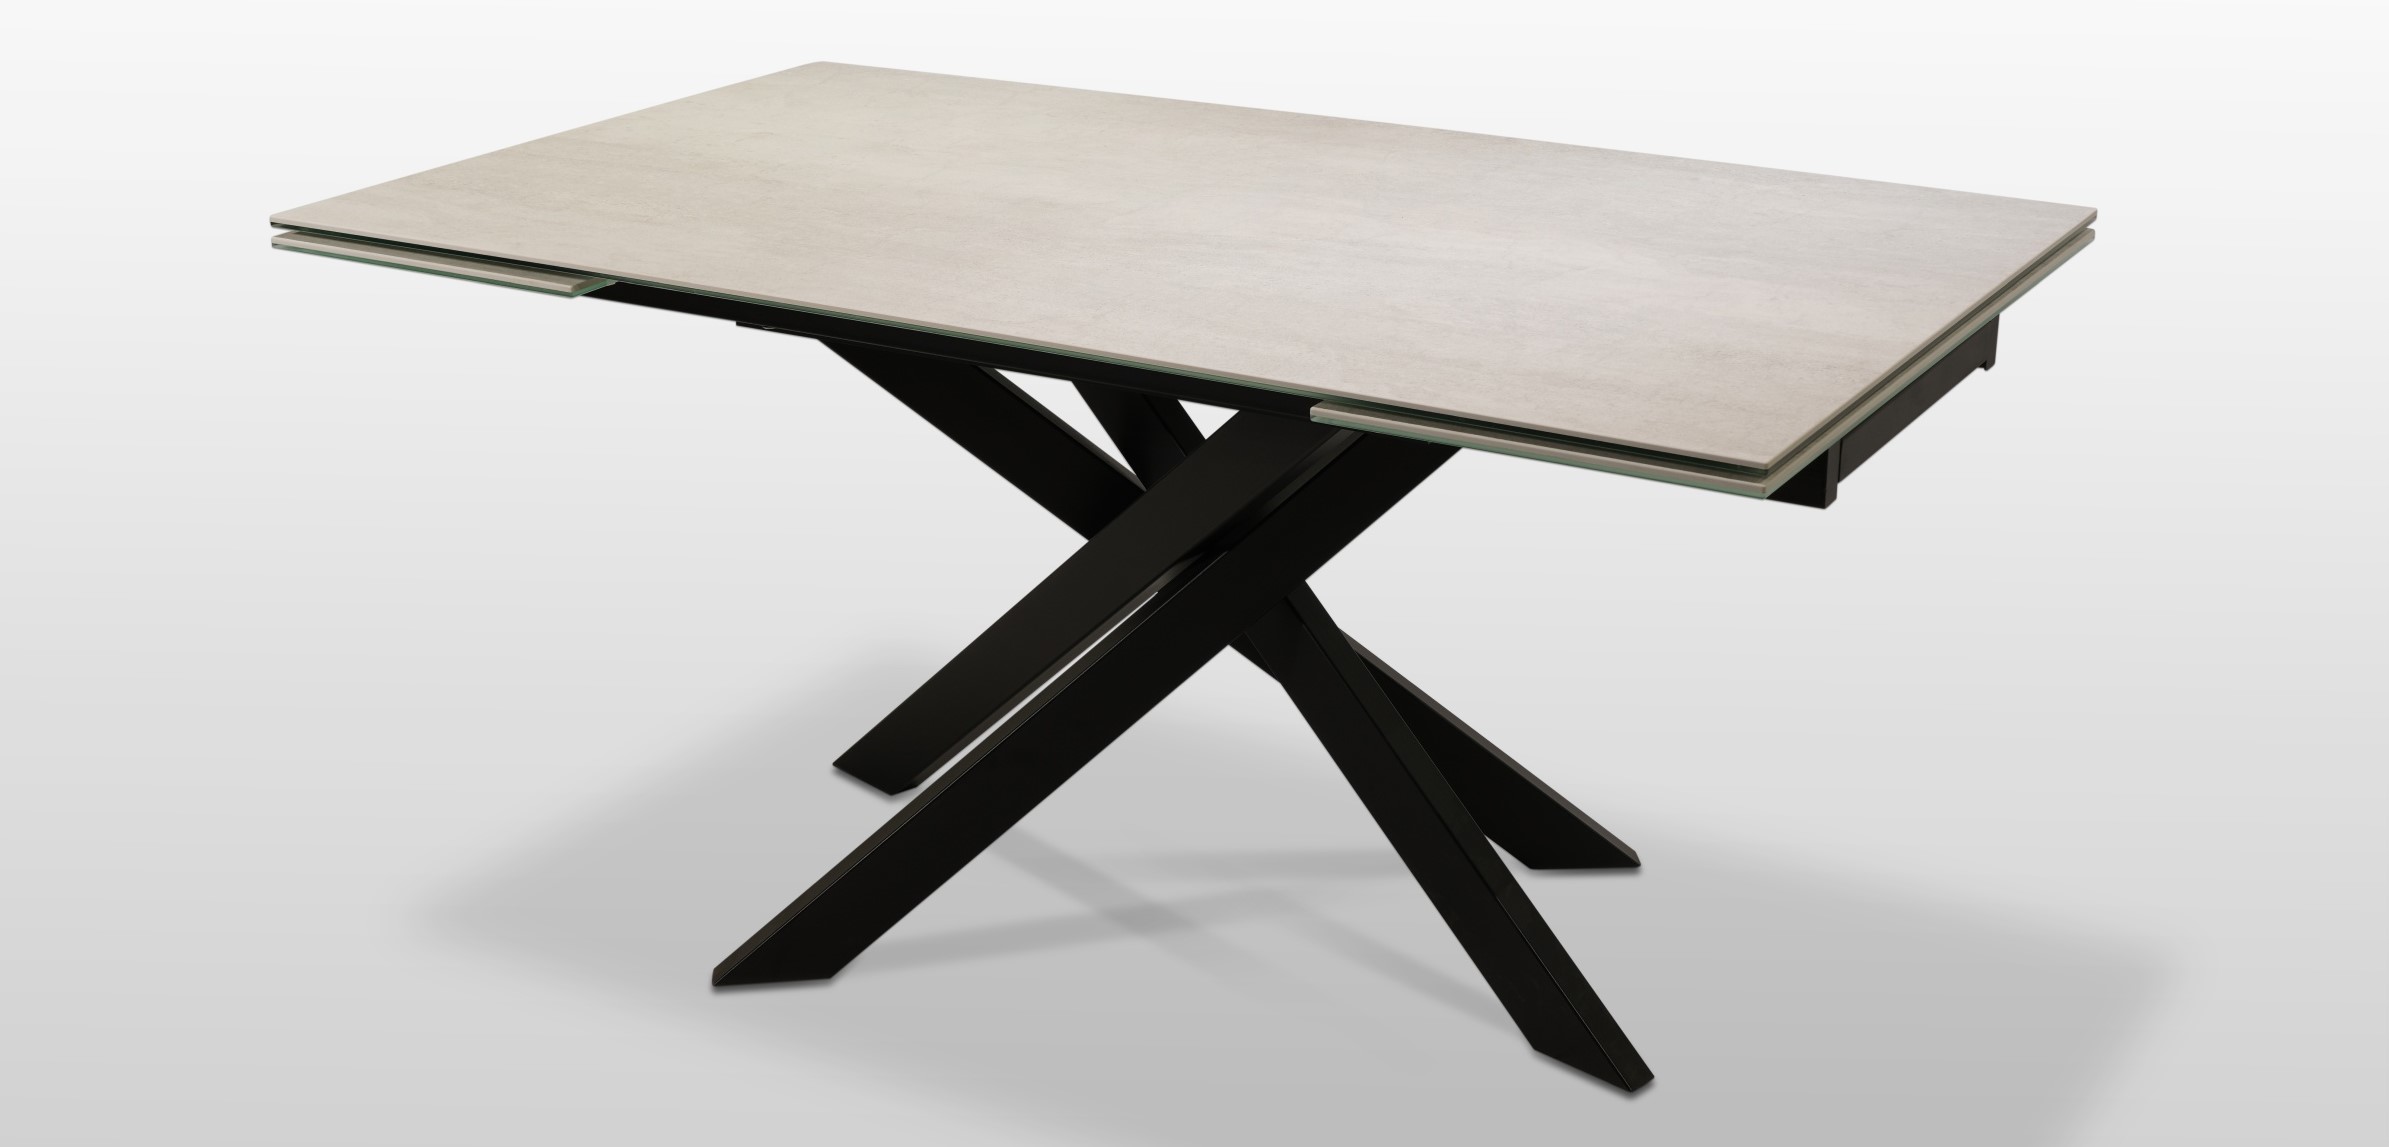 ZDJĘCIE GŁÓWNE - Stół A19 spiek kwarcowy na metalowyj czarnej nodze. Stół do kuchni, jadalni i salonu.